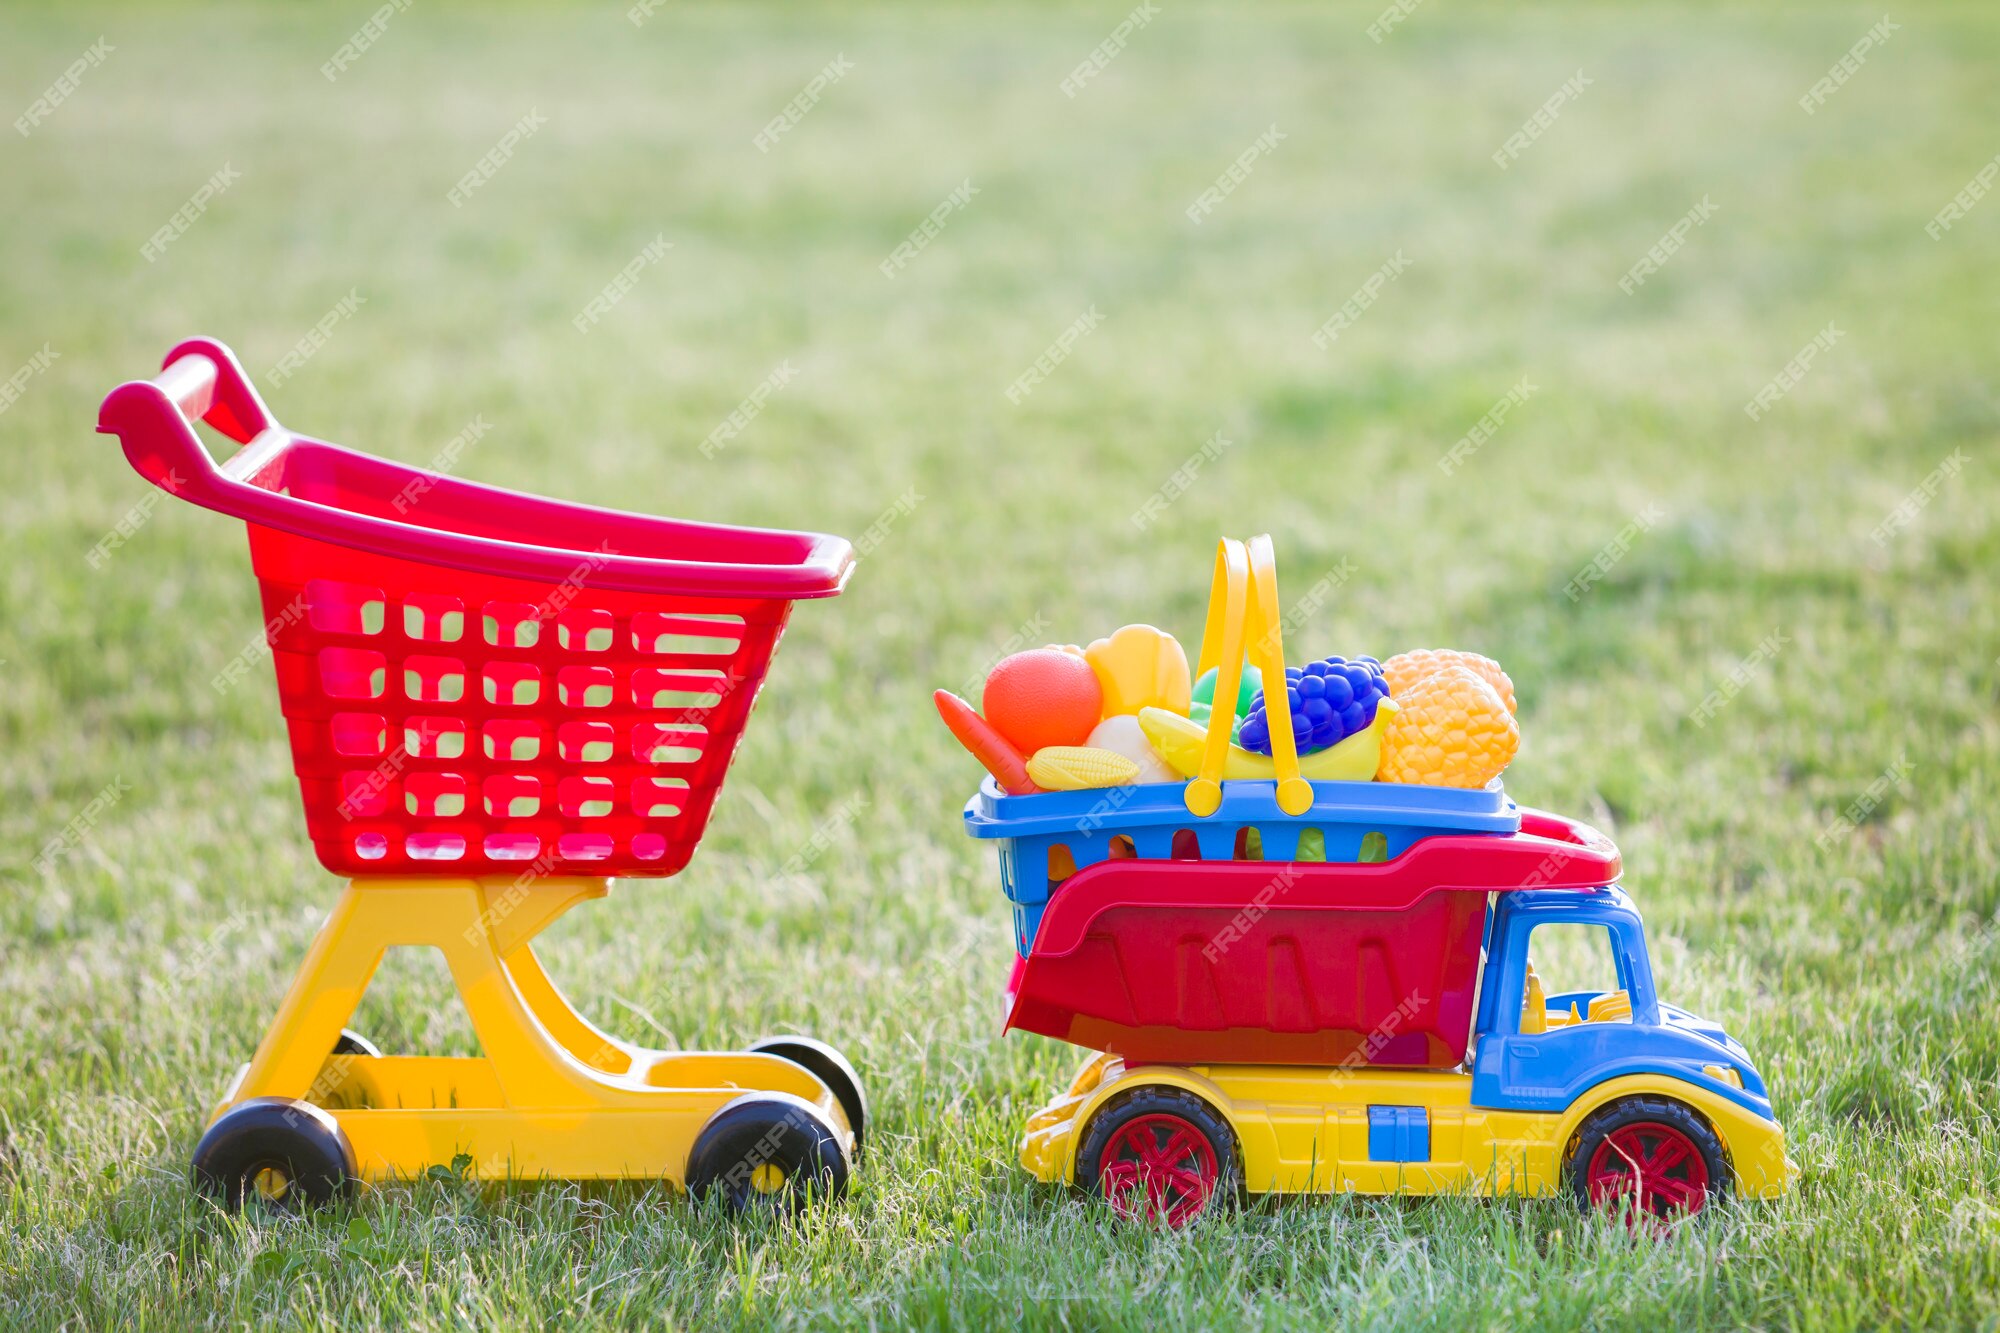 Heldere plastic kleurrijke speelgoed voor kinderen buiten op zonnige zomerdag. de vrachtwagen dragende mand van de auto met stuk speelgoed groenten fruit en het winkelen handkar. | Premium